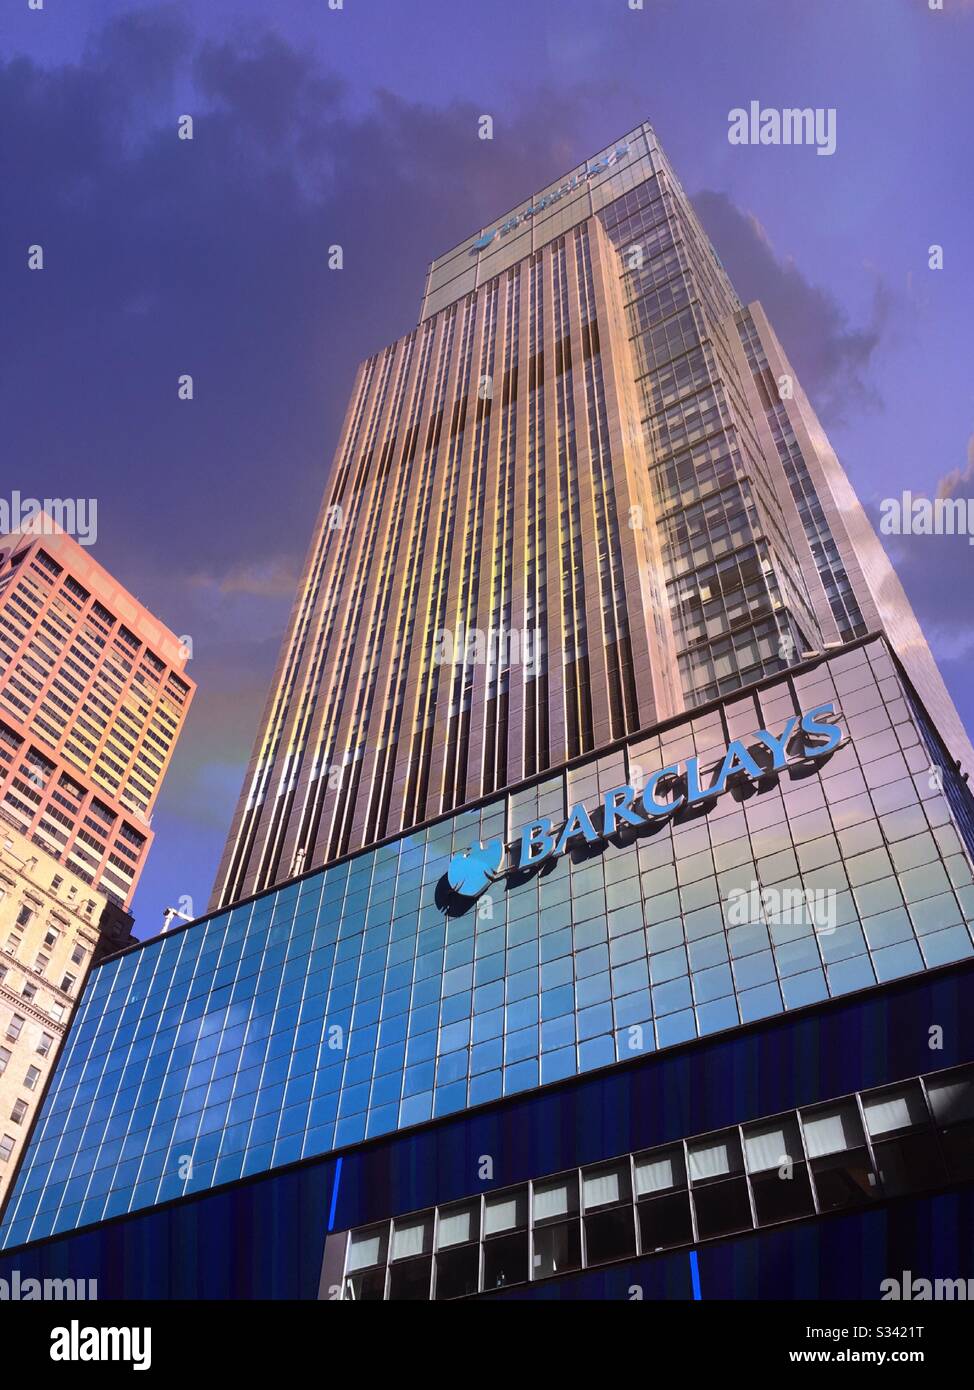 El edificio Barclays en la séptima avenida cerca de Times Square es un imponente rascacielos, Nueva York, Estados Unidos Foto de stock